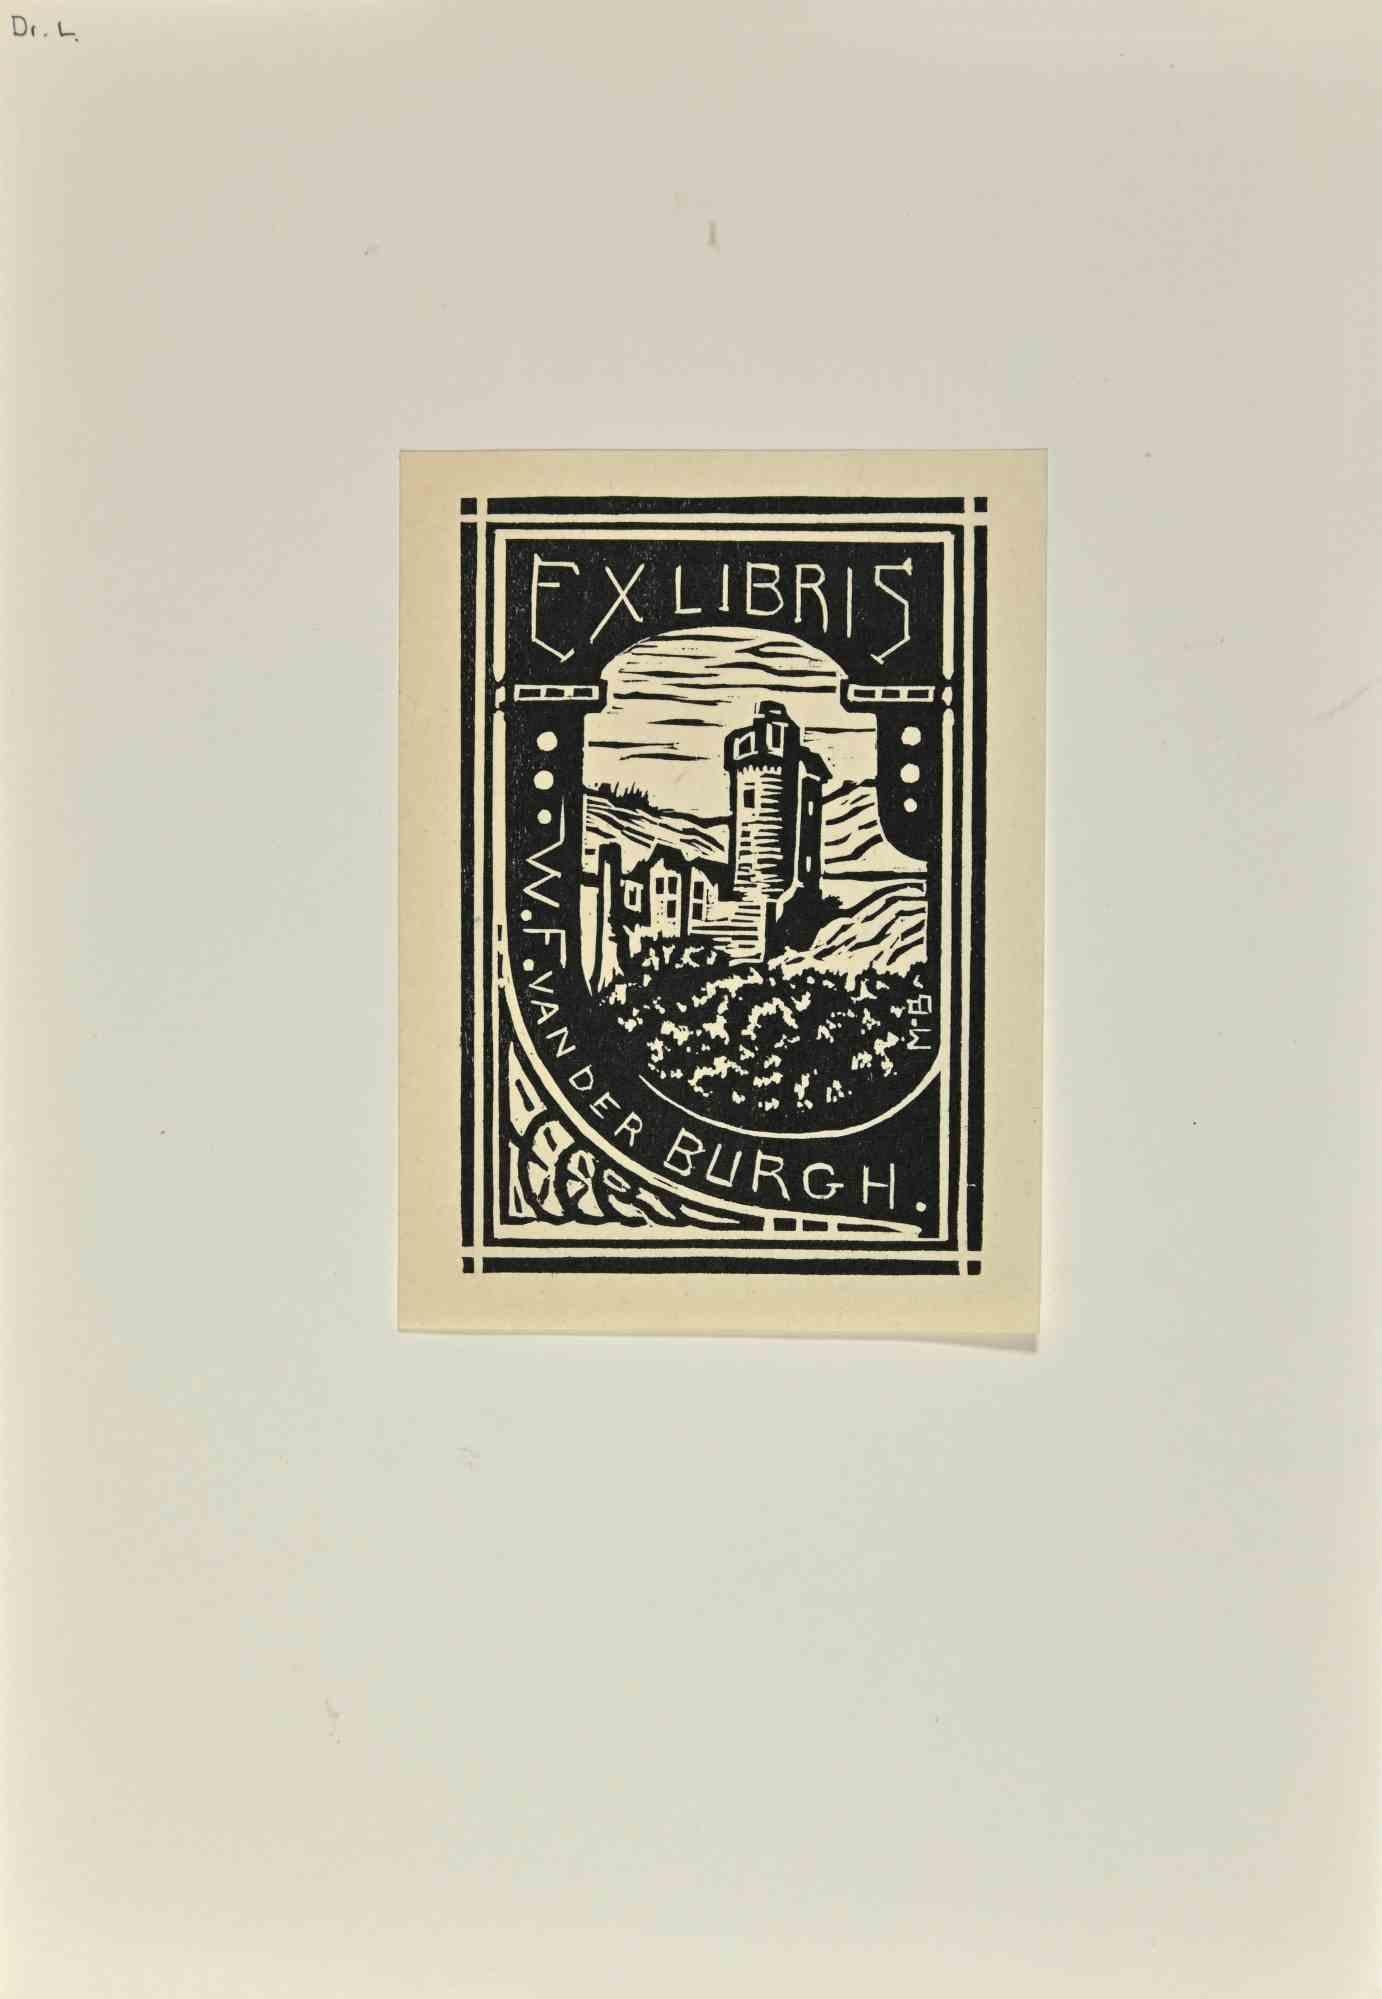  Ex Libris -Vander Burgh - Holzschnitt - Mitte des 20. Jahrhunderts